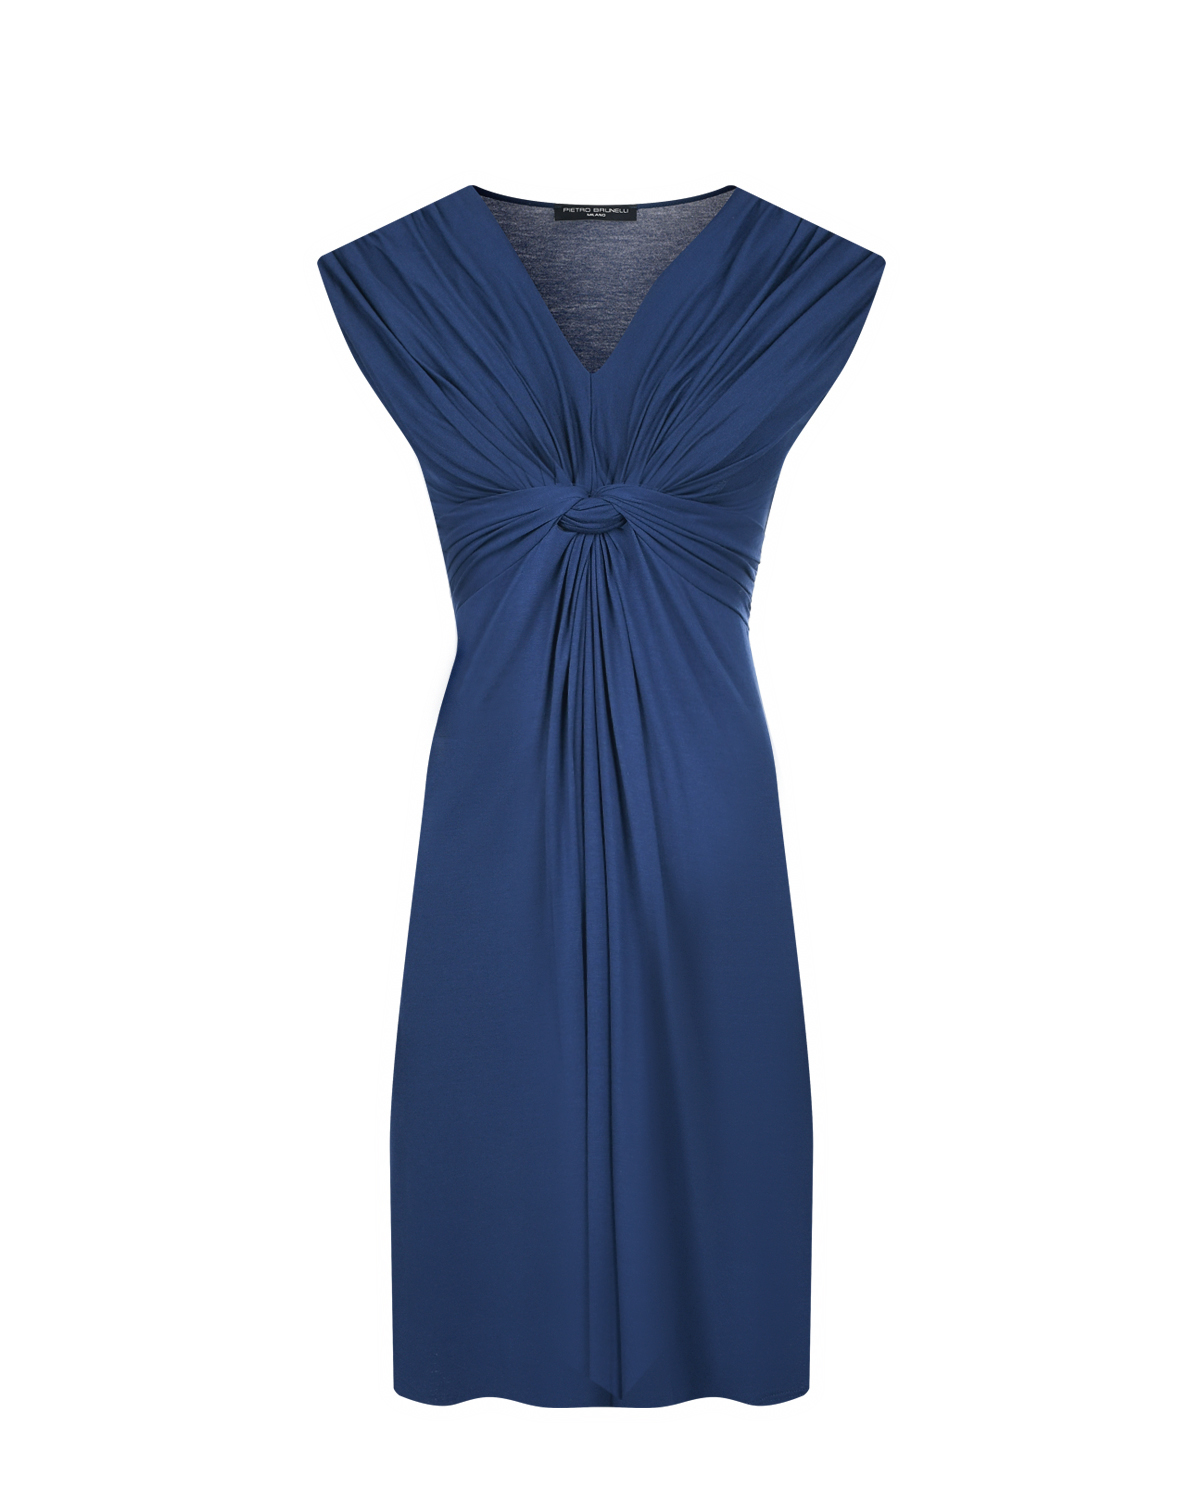 Платье синего цвета с функцией для кормления Pietro Brunelli темно синие брюки в полоску для беременных leonard pietro brunelli